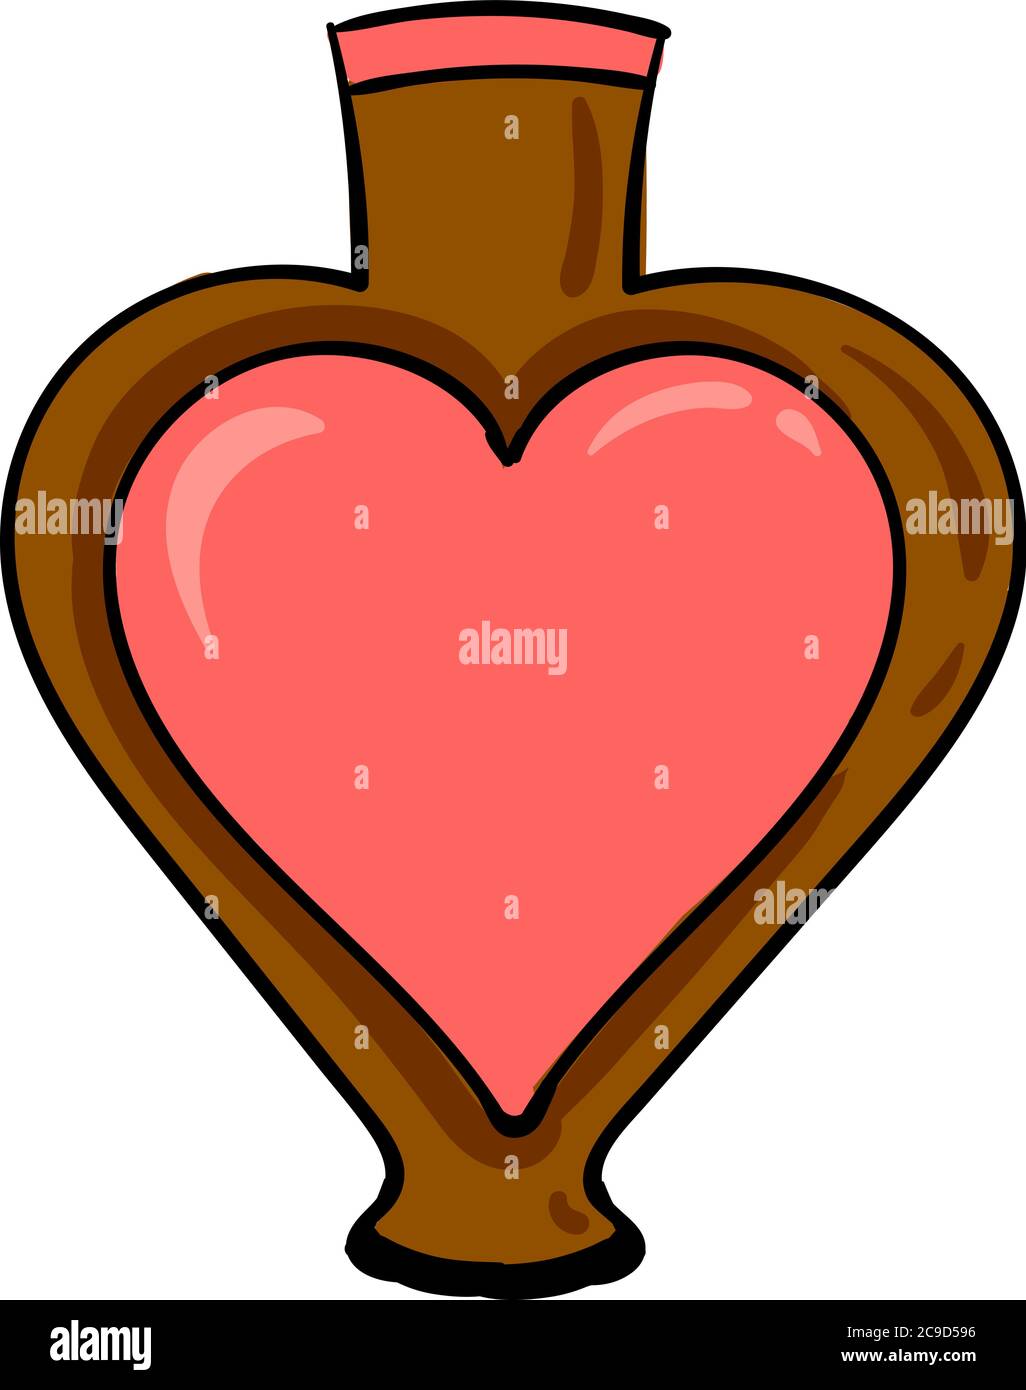 Florero de corazon Imágenes recortadas de stock - Alamy